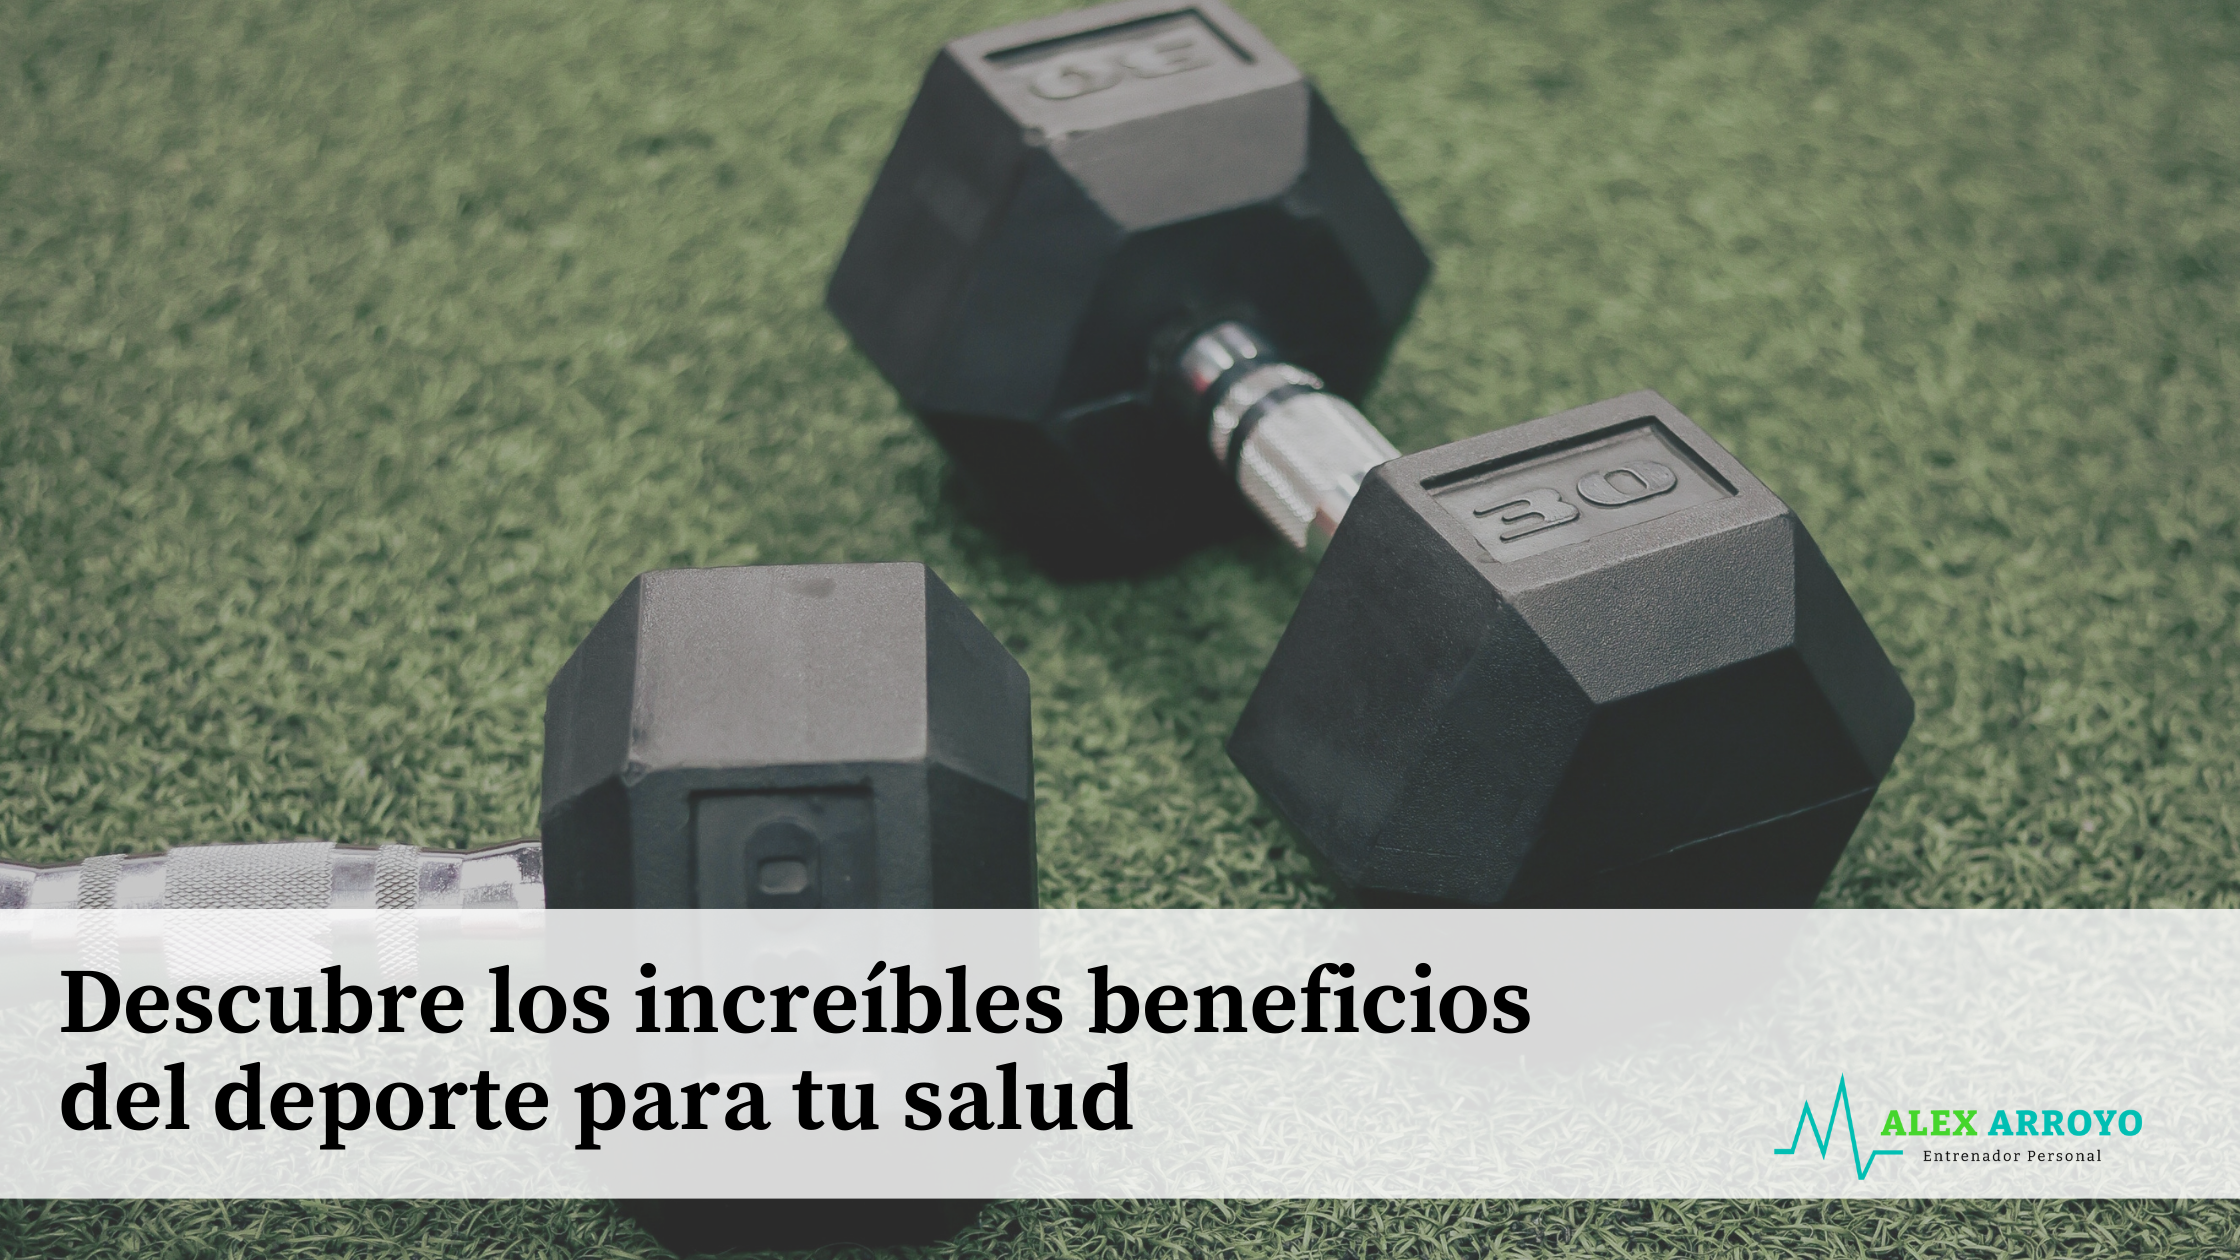 Descubre los increíbles beneficios del deporte para tu salud. Enumeramos los beneficios que nos aporta el ejercicio y los entrenamientos.